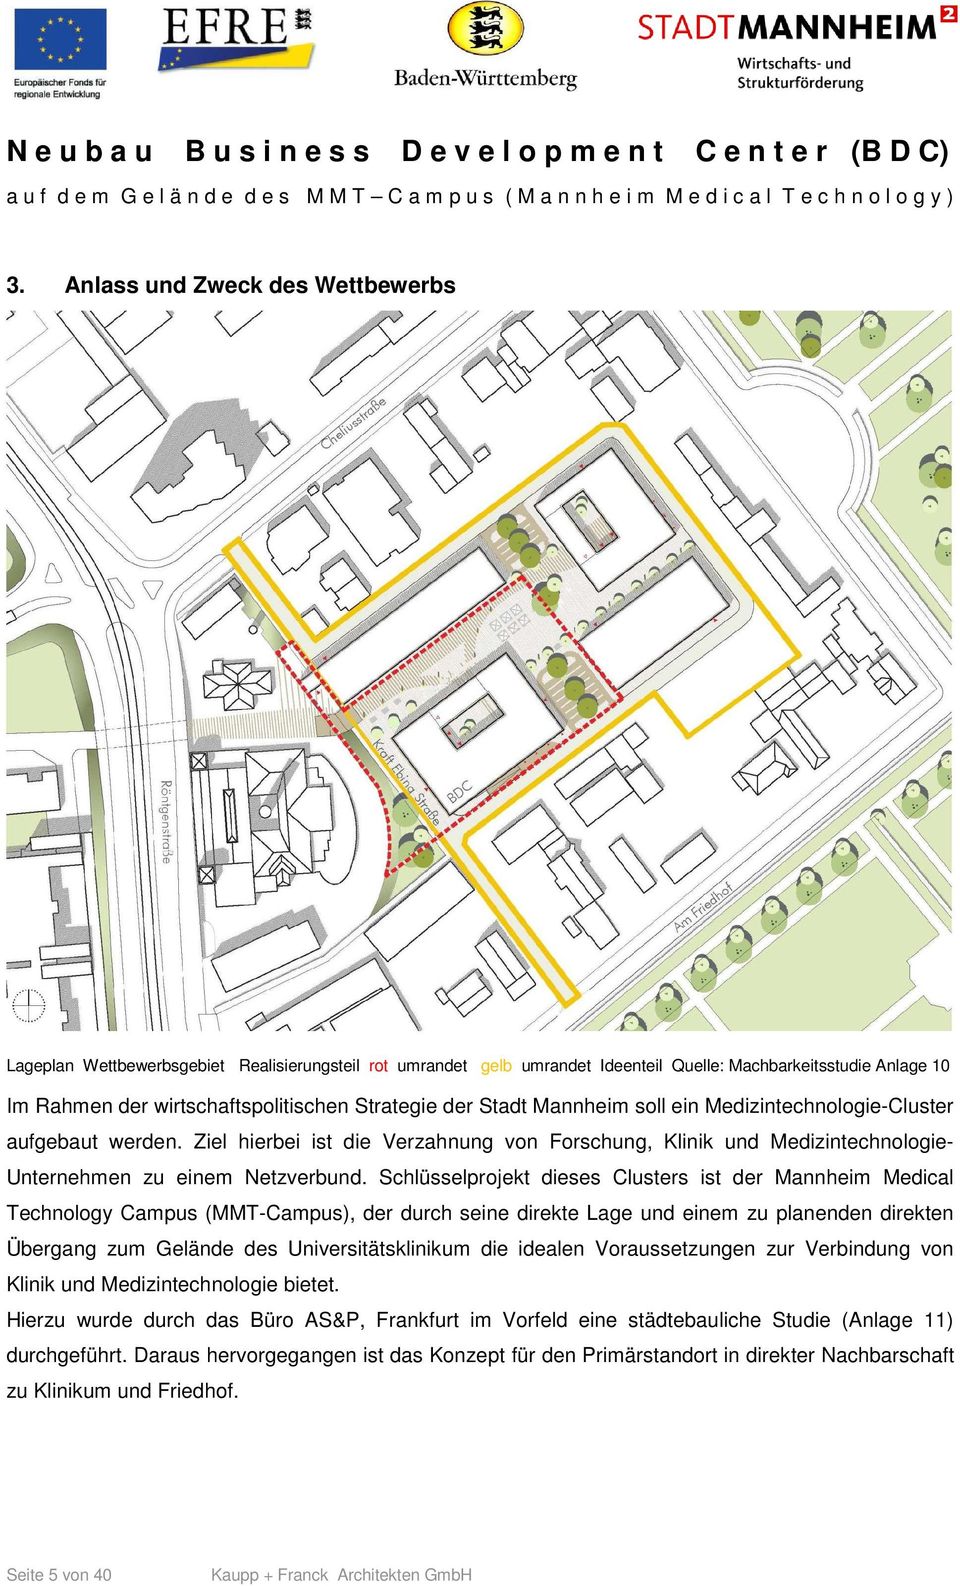 Schlüsselprojekt dieses Clusters ist der Mannheim Medical Technology Campus (MMT-Campus), der durch seine direkte Lage und einem zu planenden direkten Übergang zum Gelände des Universitätsklinikum